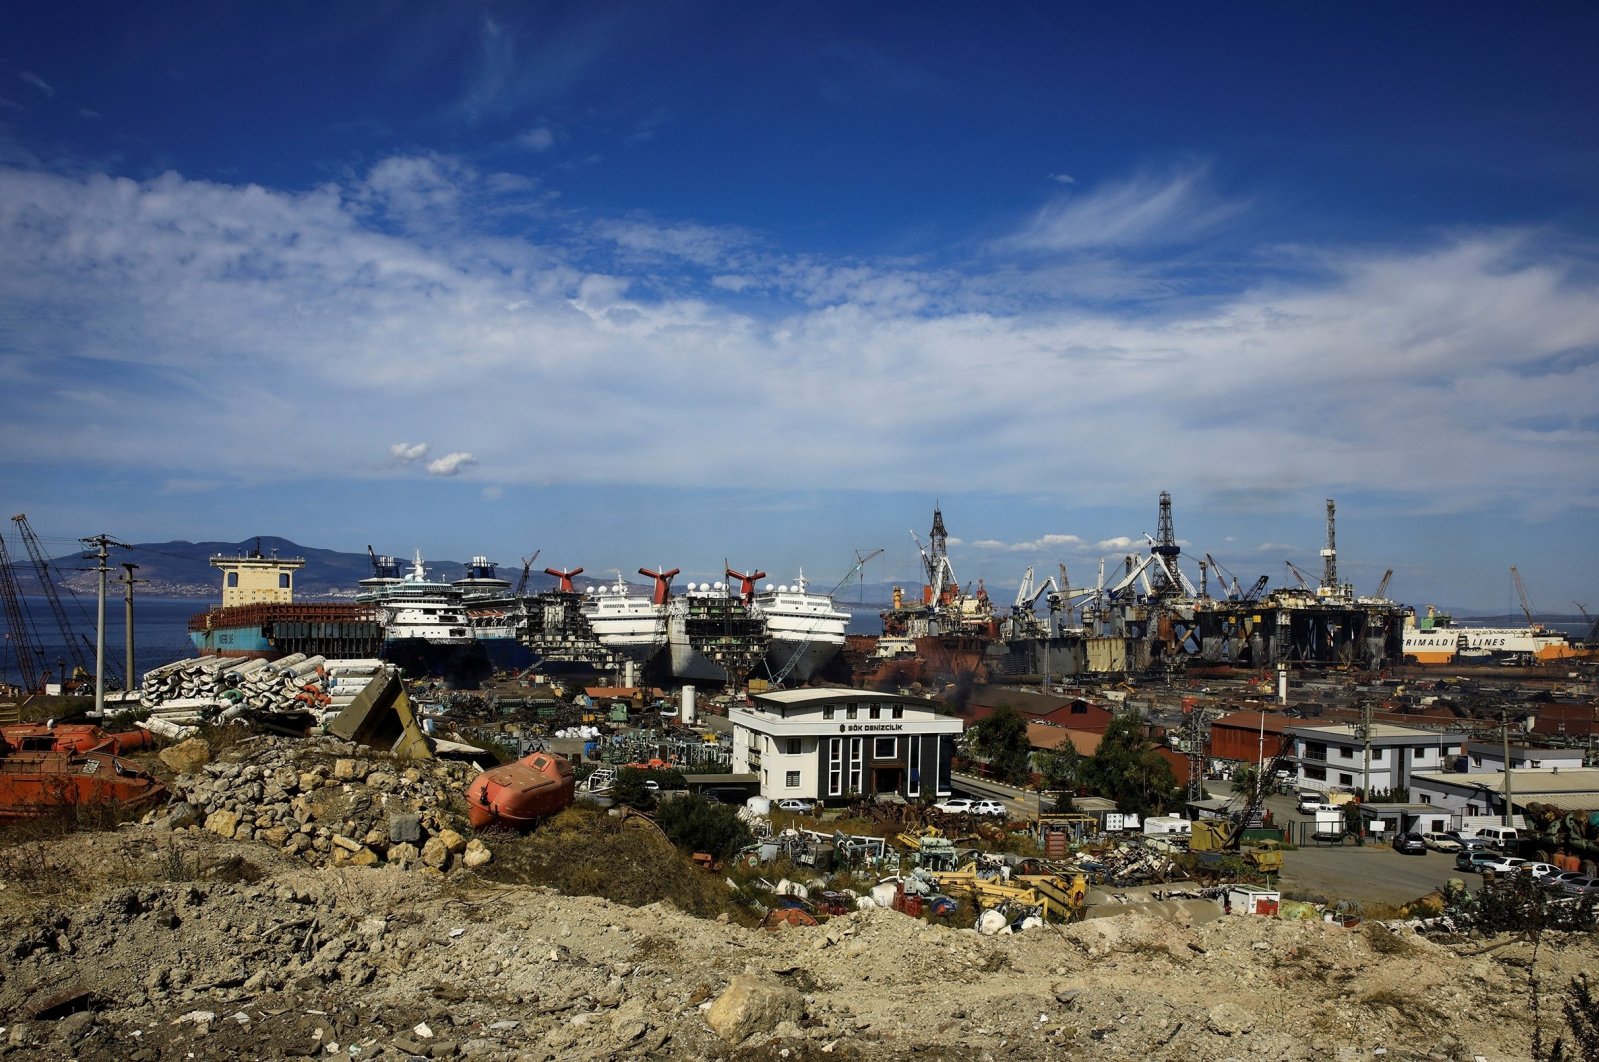 Turki menjamin kapal ‘asbes’ tidak menimbulkan bahaya lingkungan